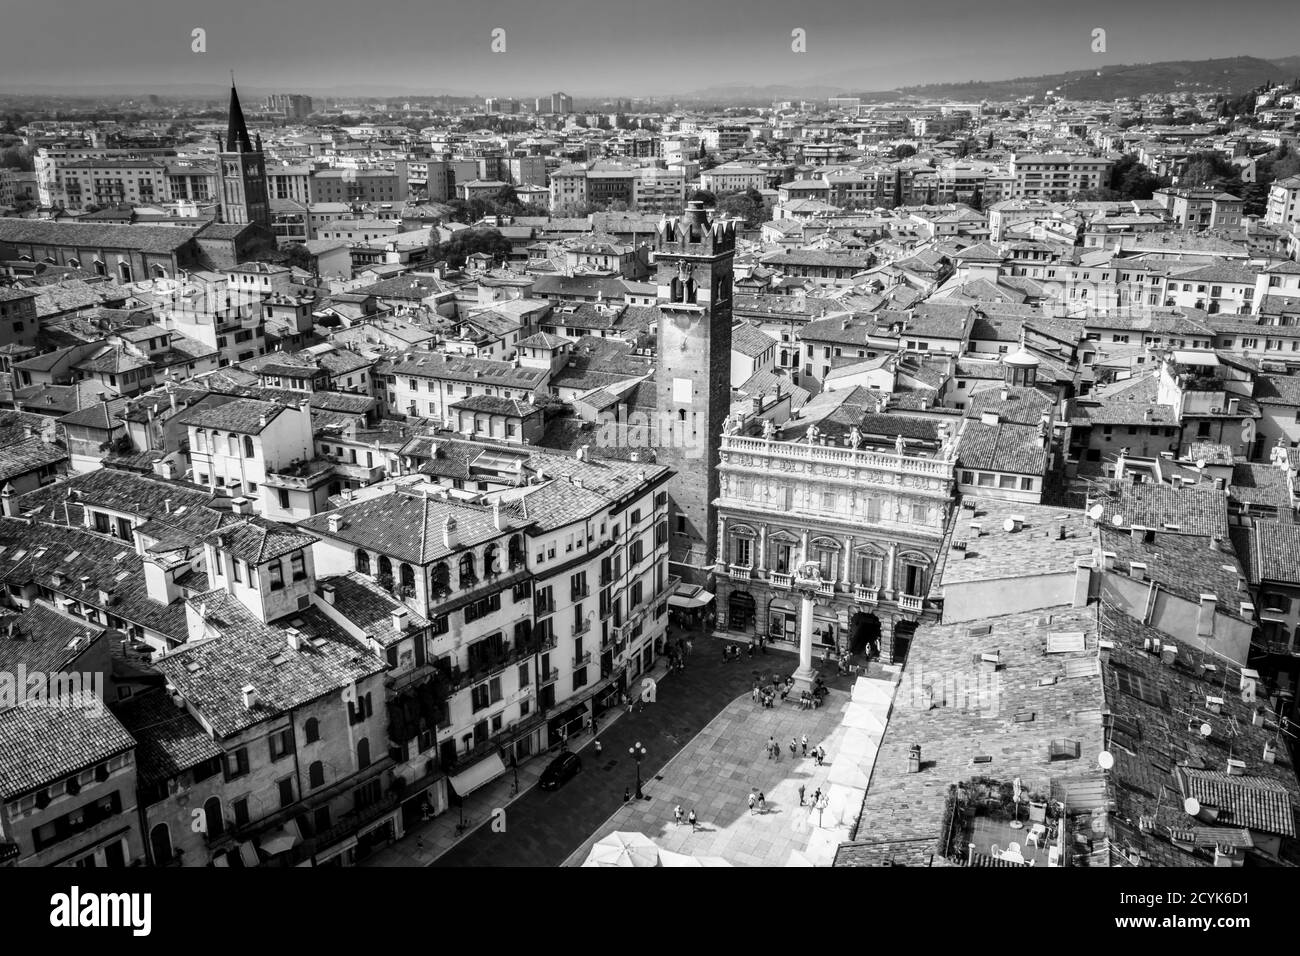 Vue sur la ville de Vérone depuis une tour de l'horloge, Vérone, Italie, Europe Banque D'Images